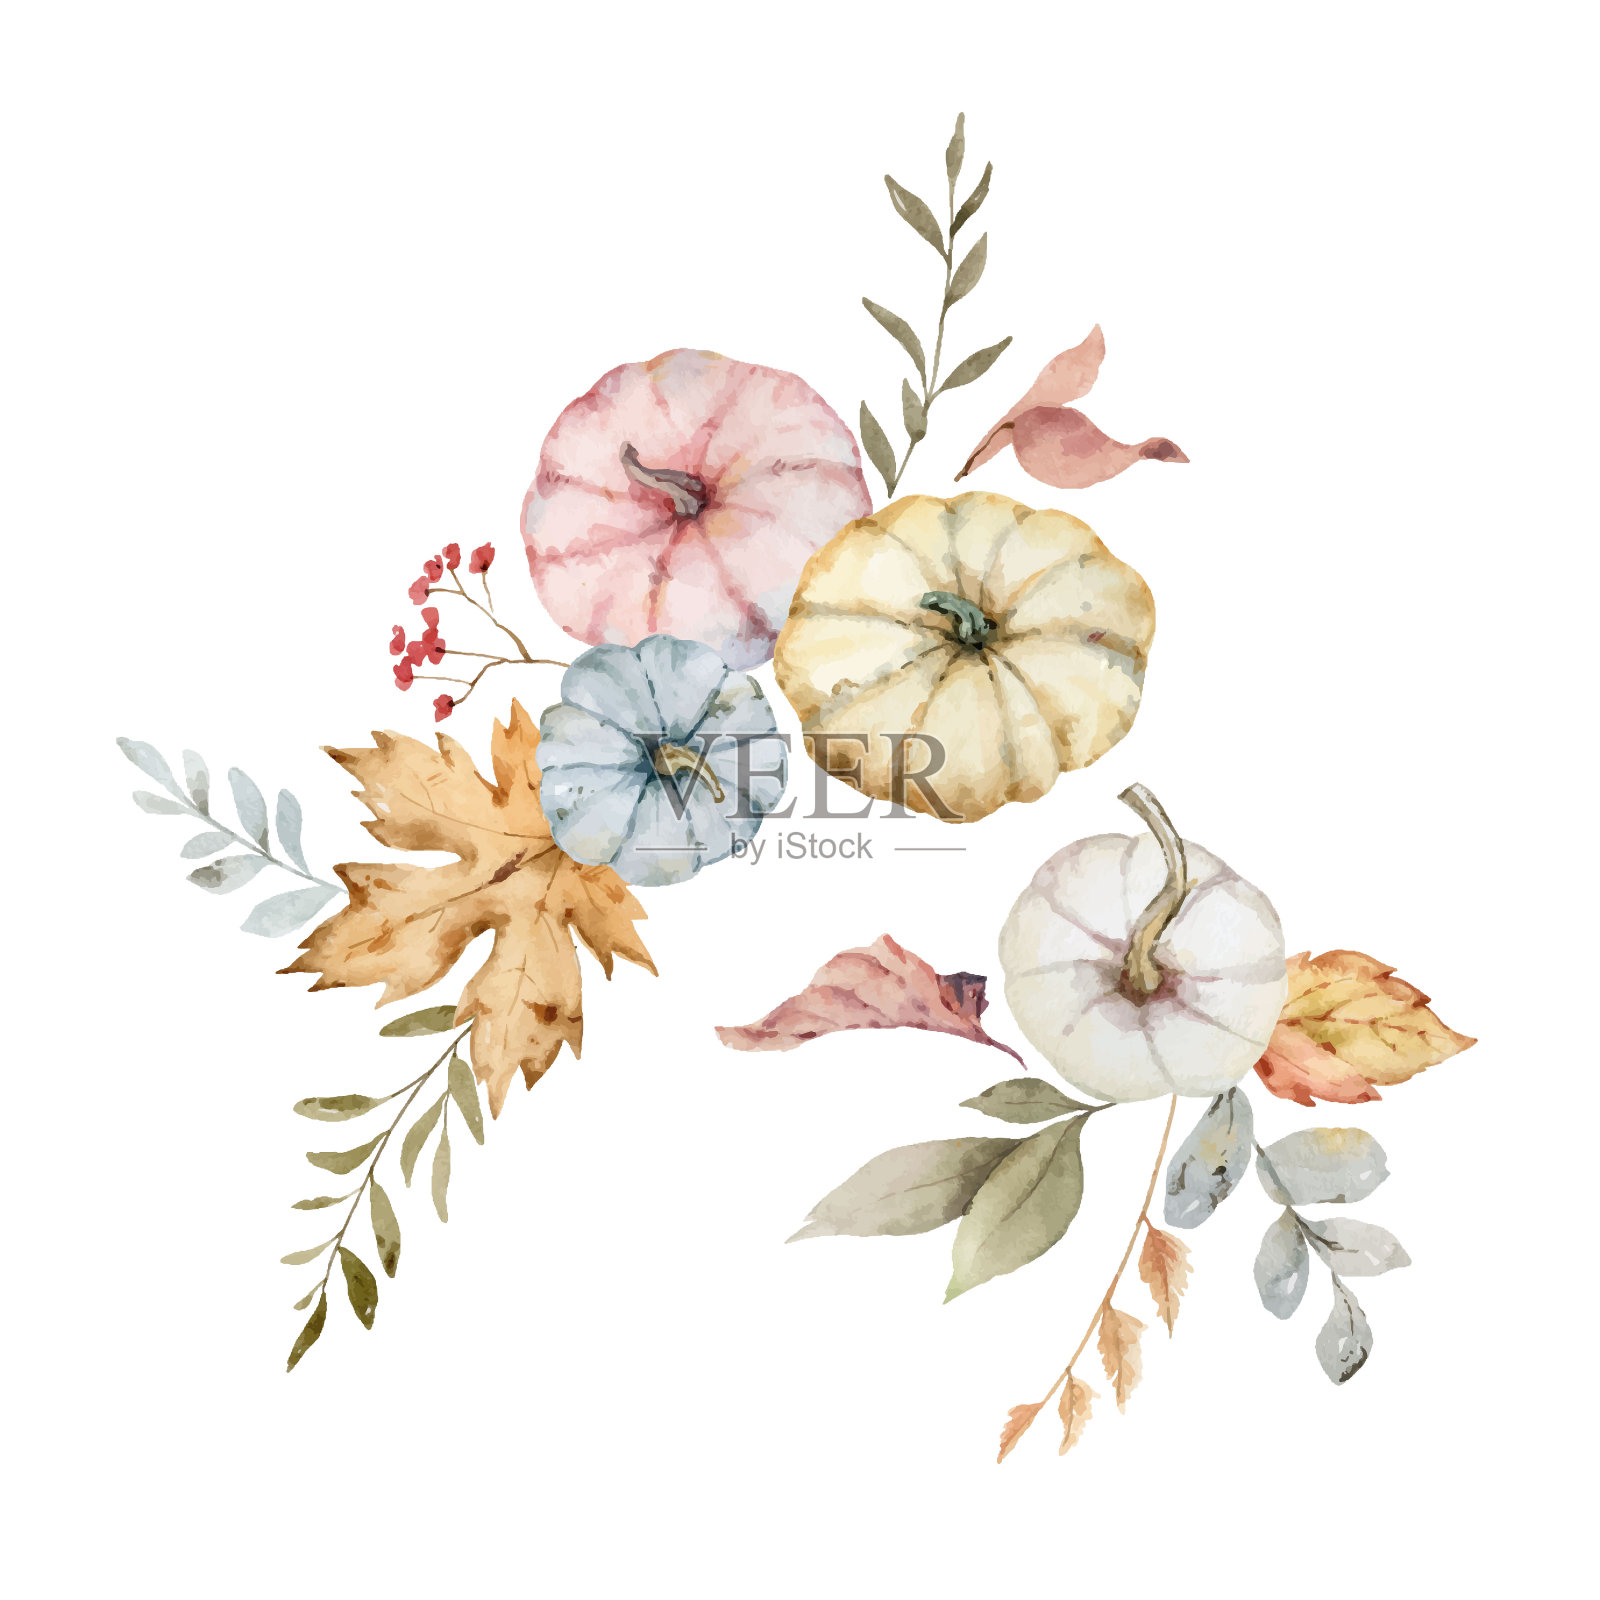 感恩节的水彩向量明信片，用彩色南瓜，秋天的树枝和树叶孤立在白色背景上的问候安排。插画图片素材